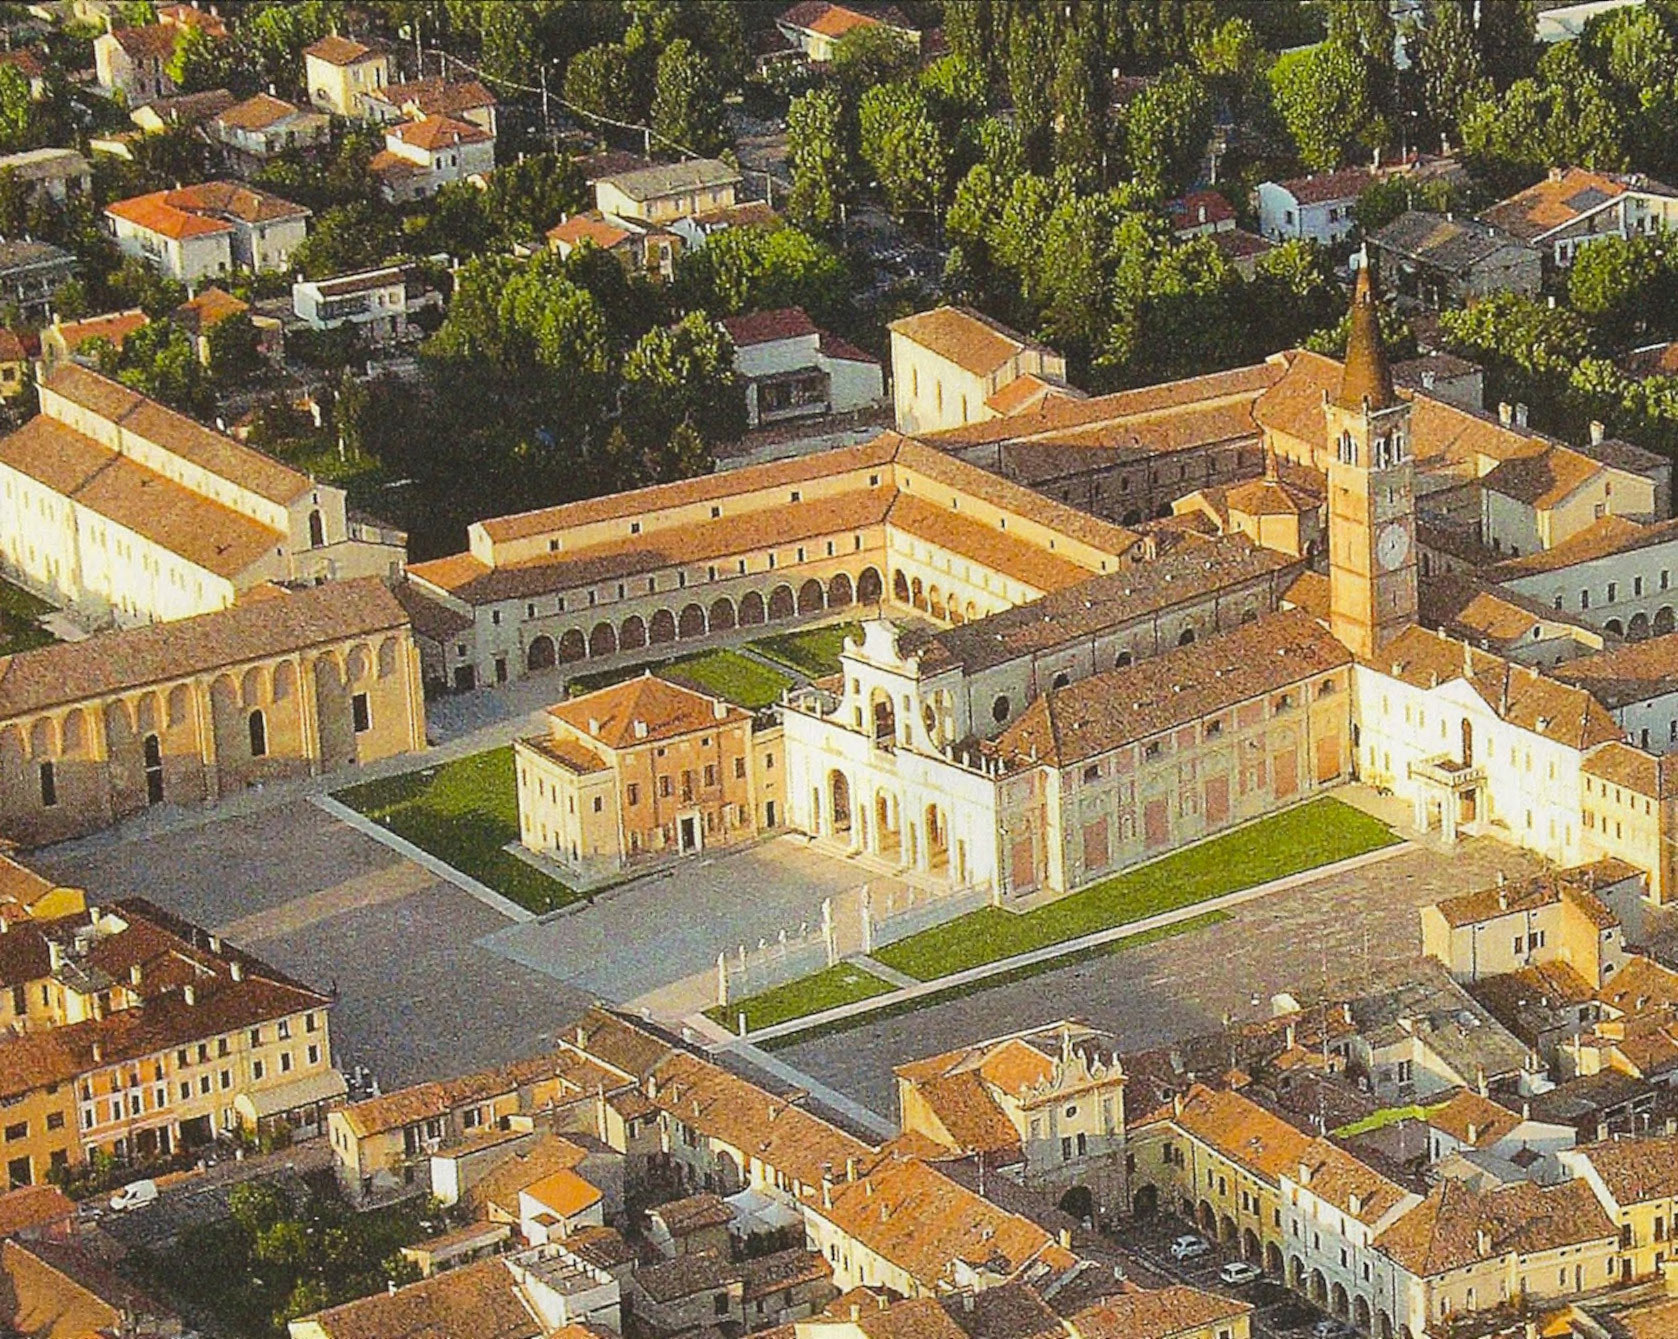 San Benedetto Po.Veduta del centro dell'antico monastero, ora cuore dell'abitato. Si notano la Basilica di Giulio Romano, e all'estrema sinistra il grande Refettorio, connotato dagli archetti pensili.
